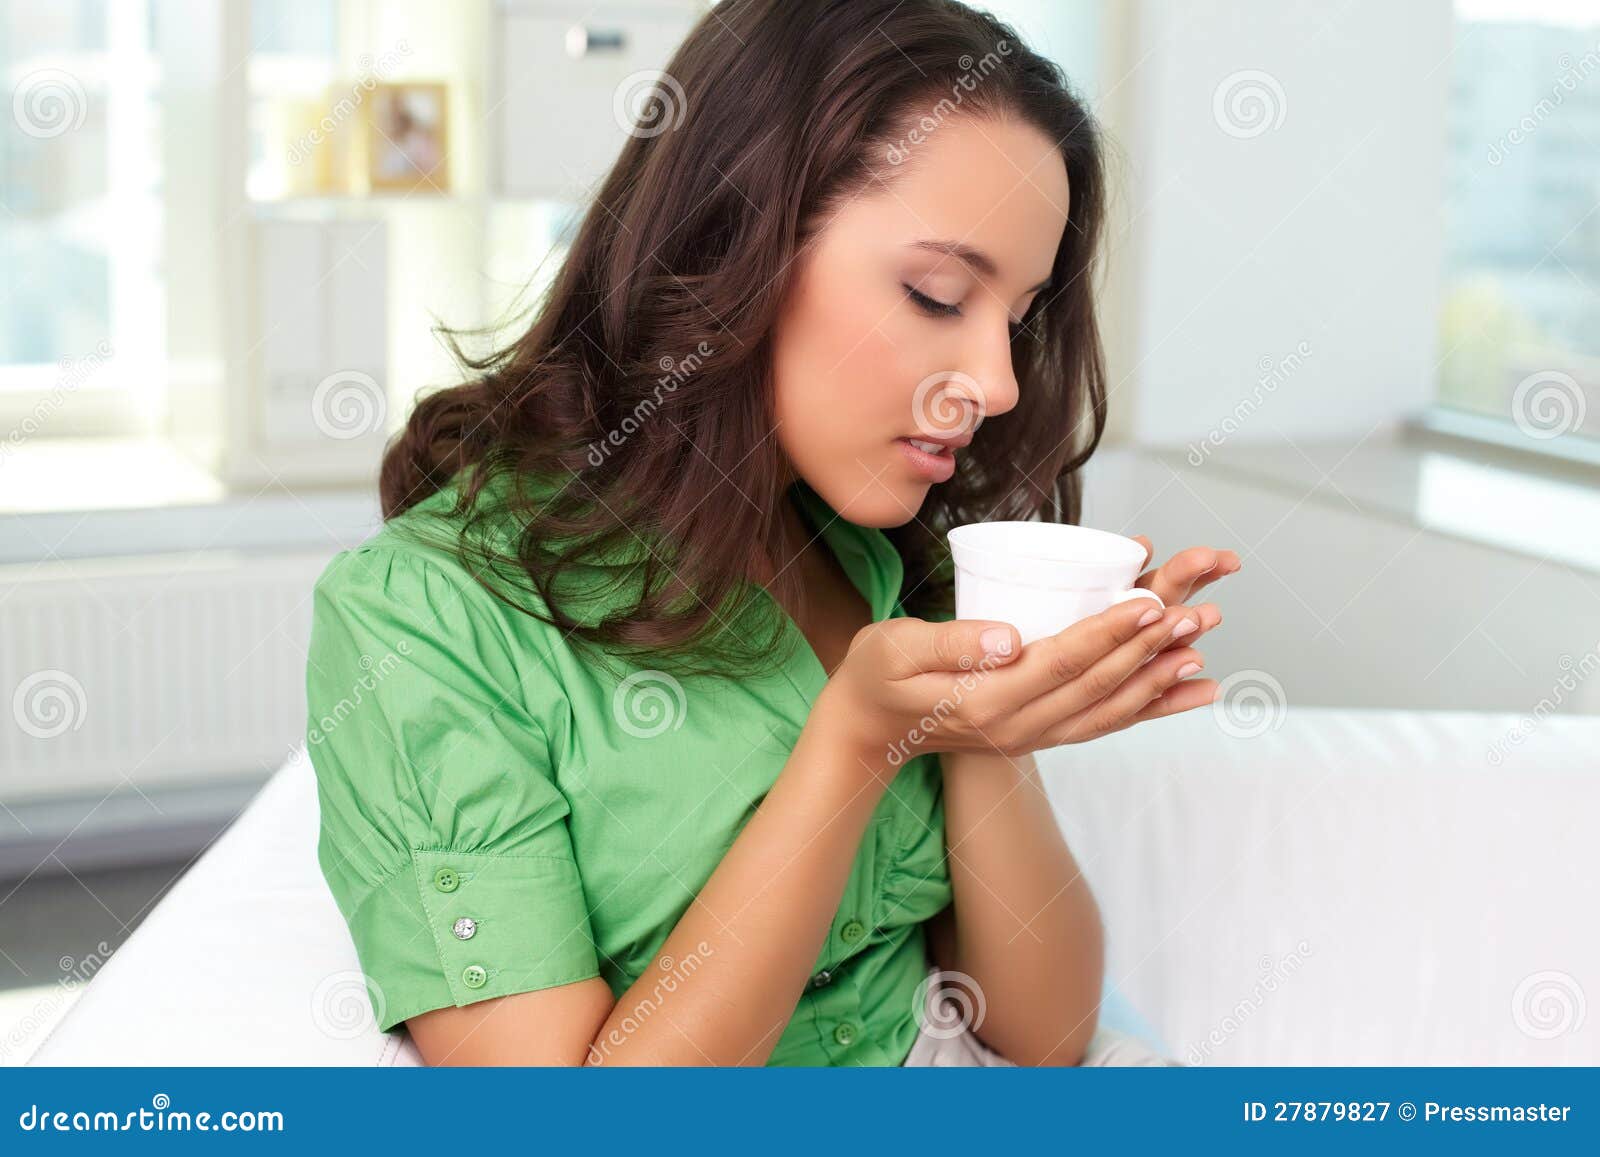 Enjoying tea stock image. Image of charm, human, latino - 27879827